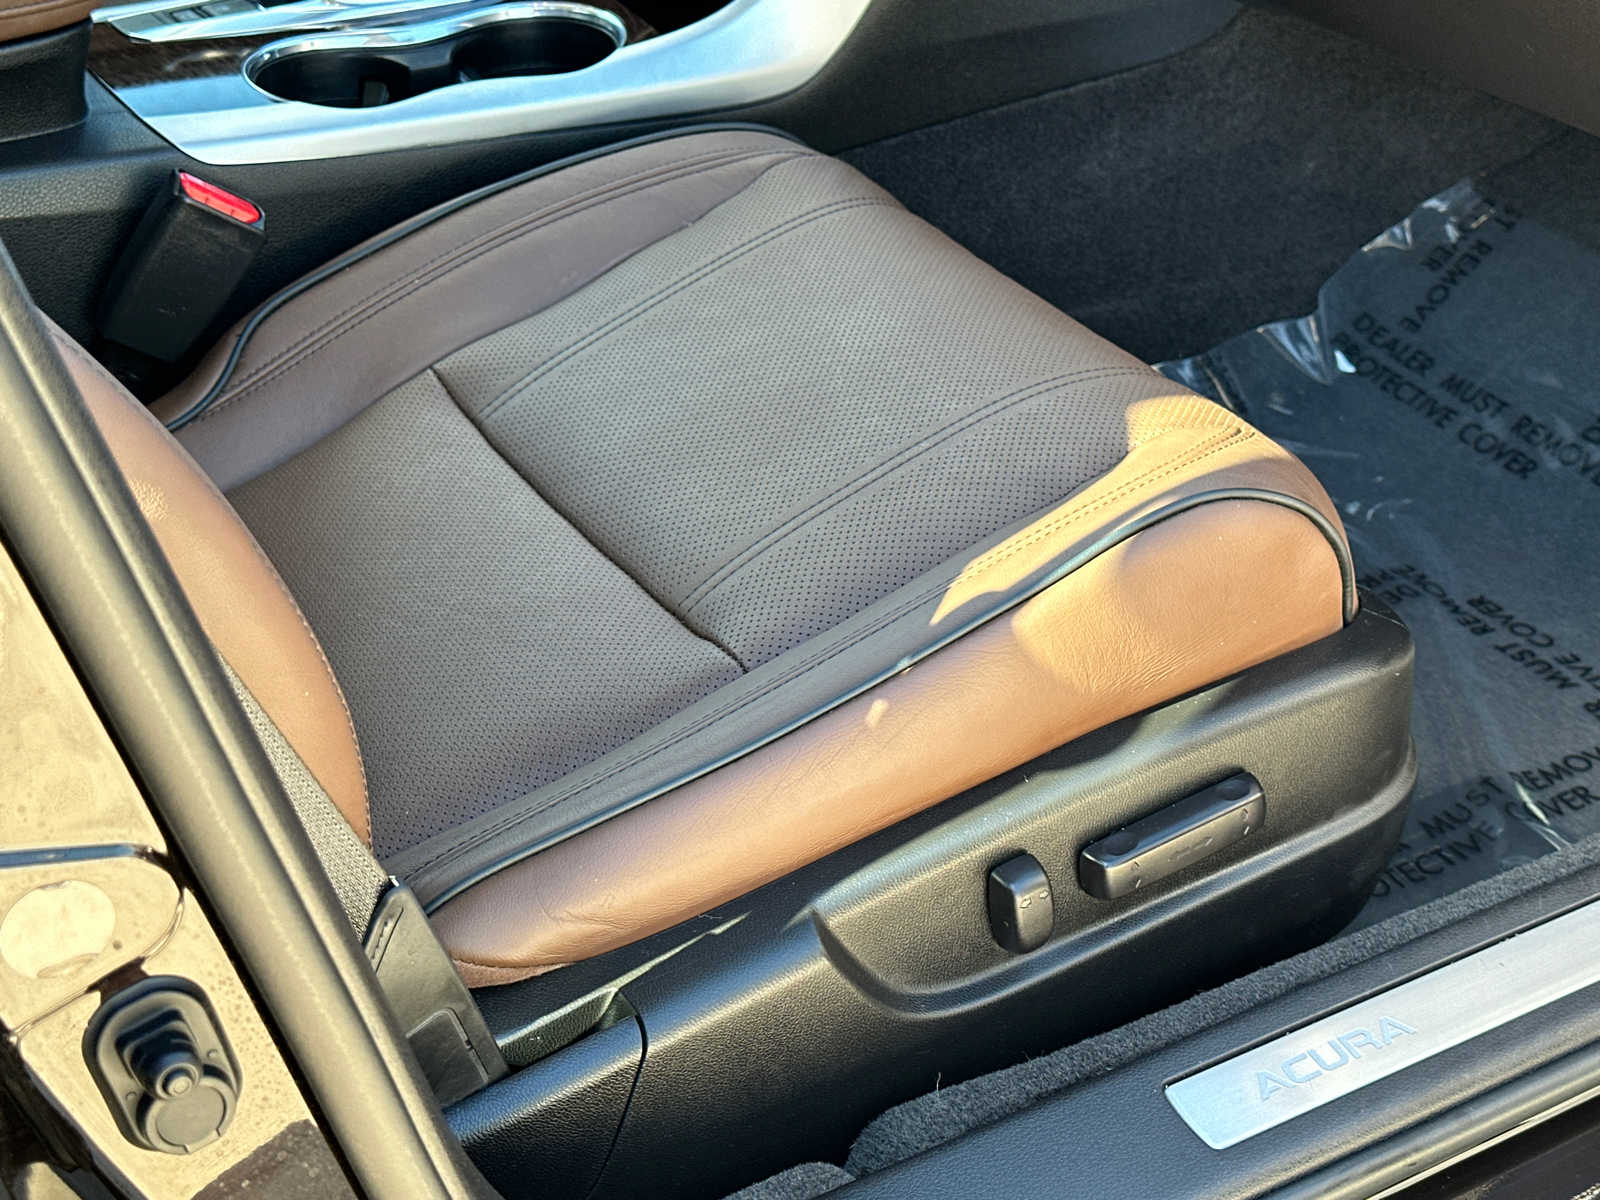 2018 Acura TLX 3.5L V6 16